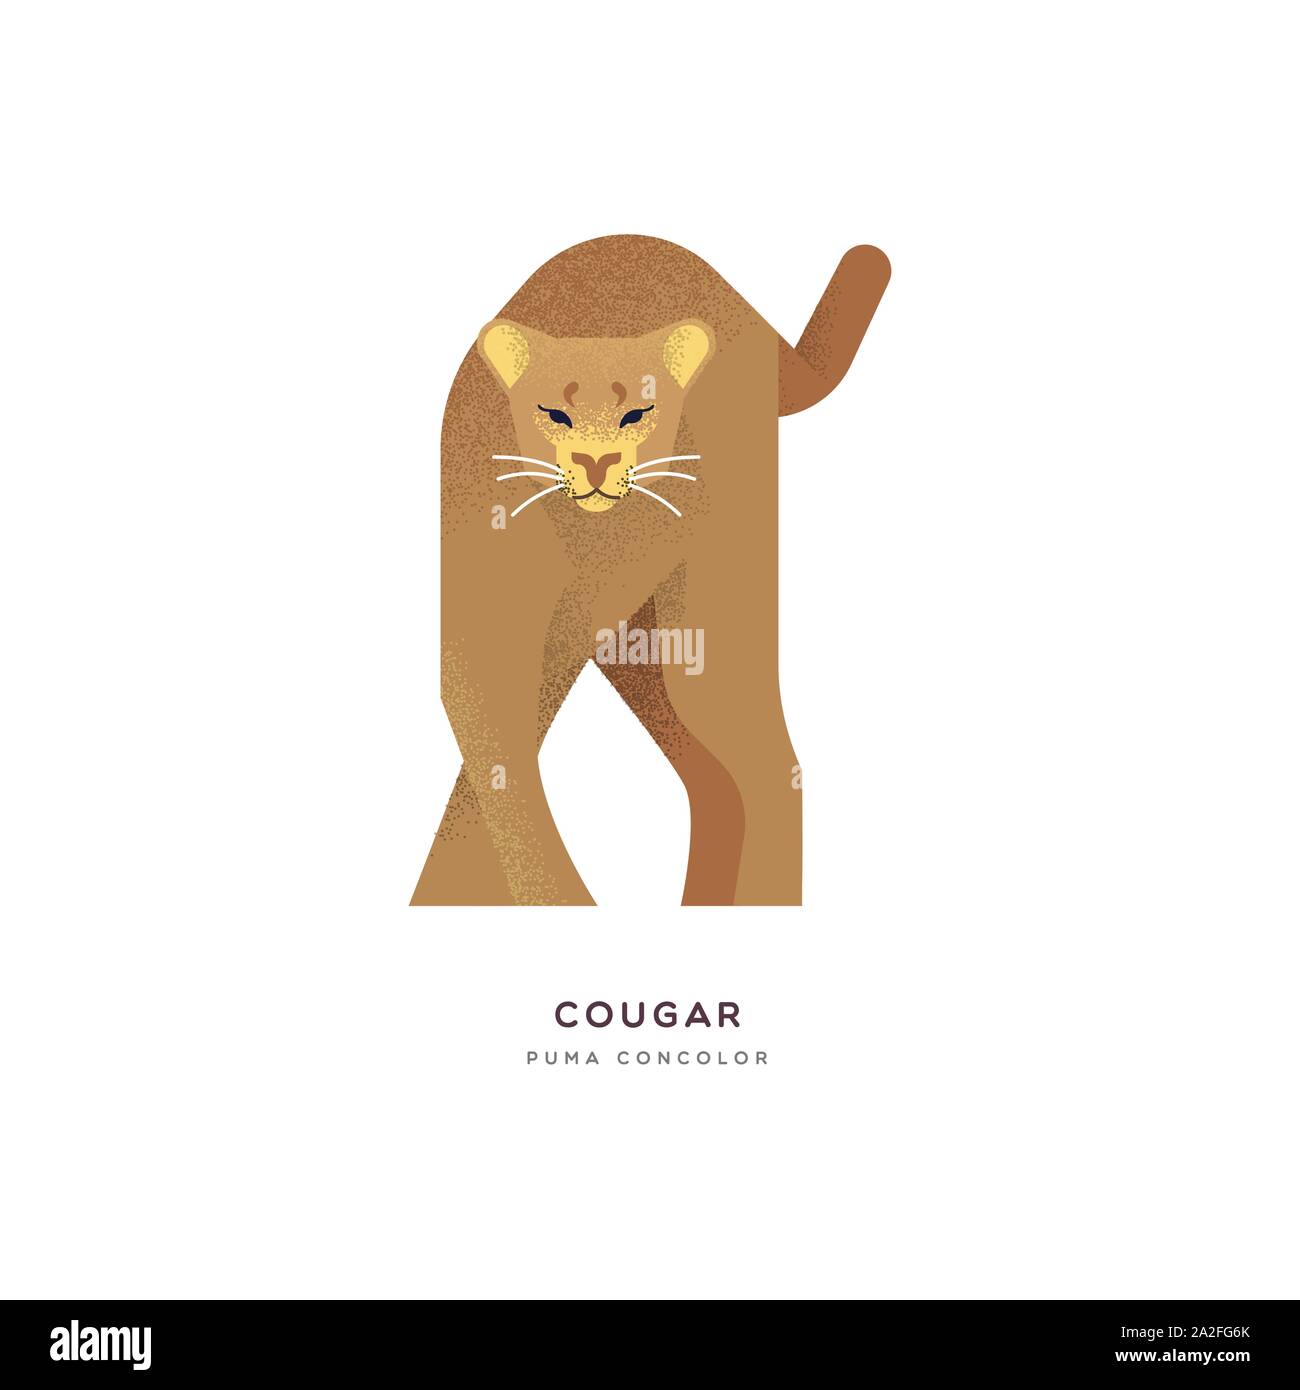 Cougar animal Abbildung: große wilde Katze auf isolierten weißen Hintergrund. Pädagogische wildlife Design mit Pflanzenarten Name Label. Stock Vektor